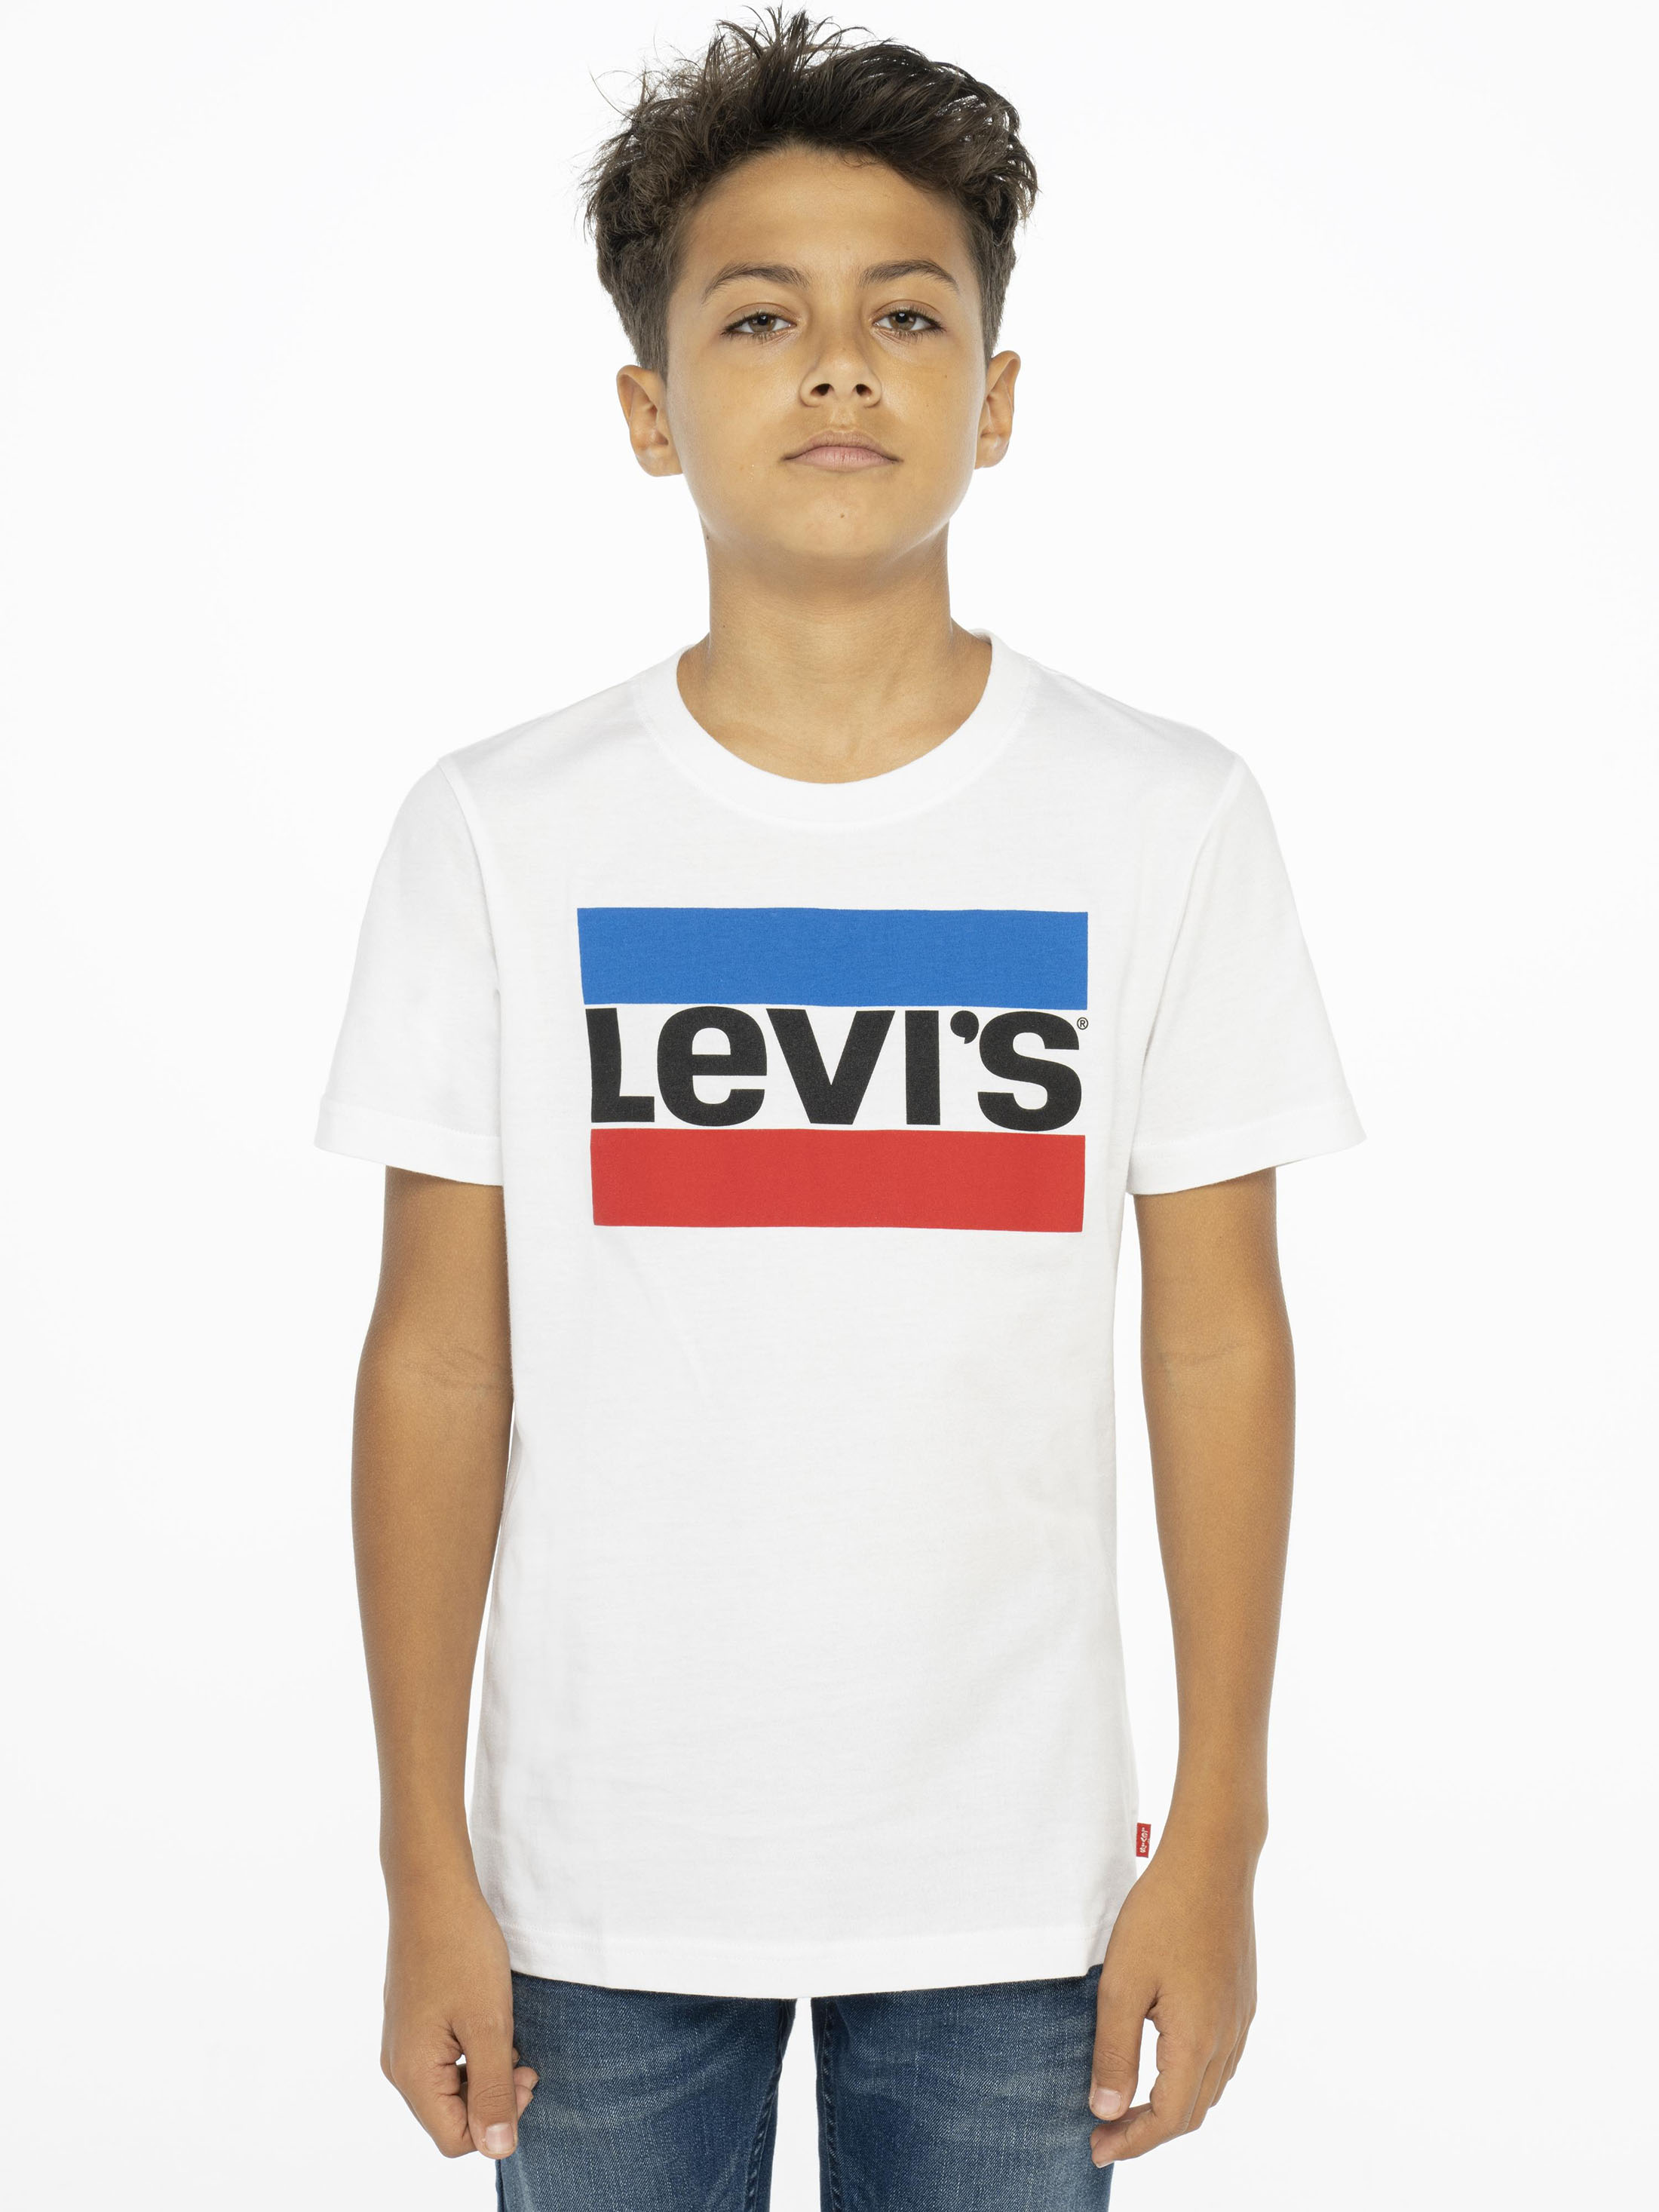 Levi's Boys' Short Sleeve Sportswear T-Shirt, Sizes 4-18 - image 5 of 5